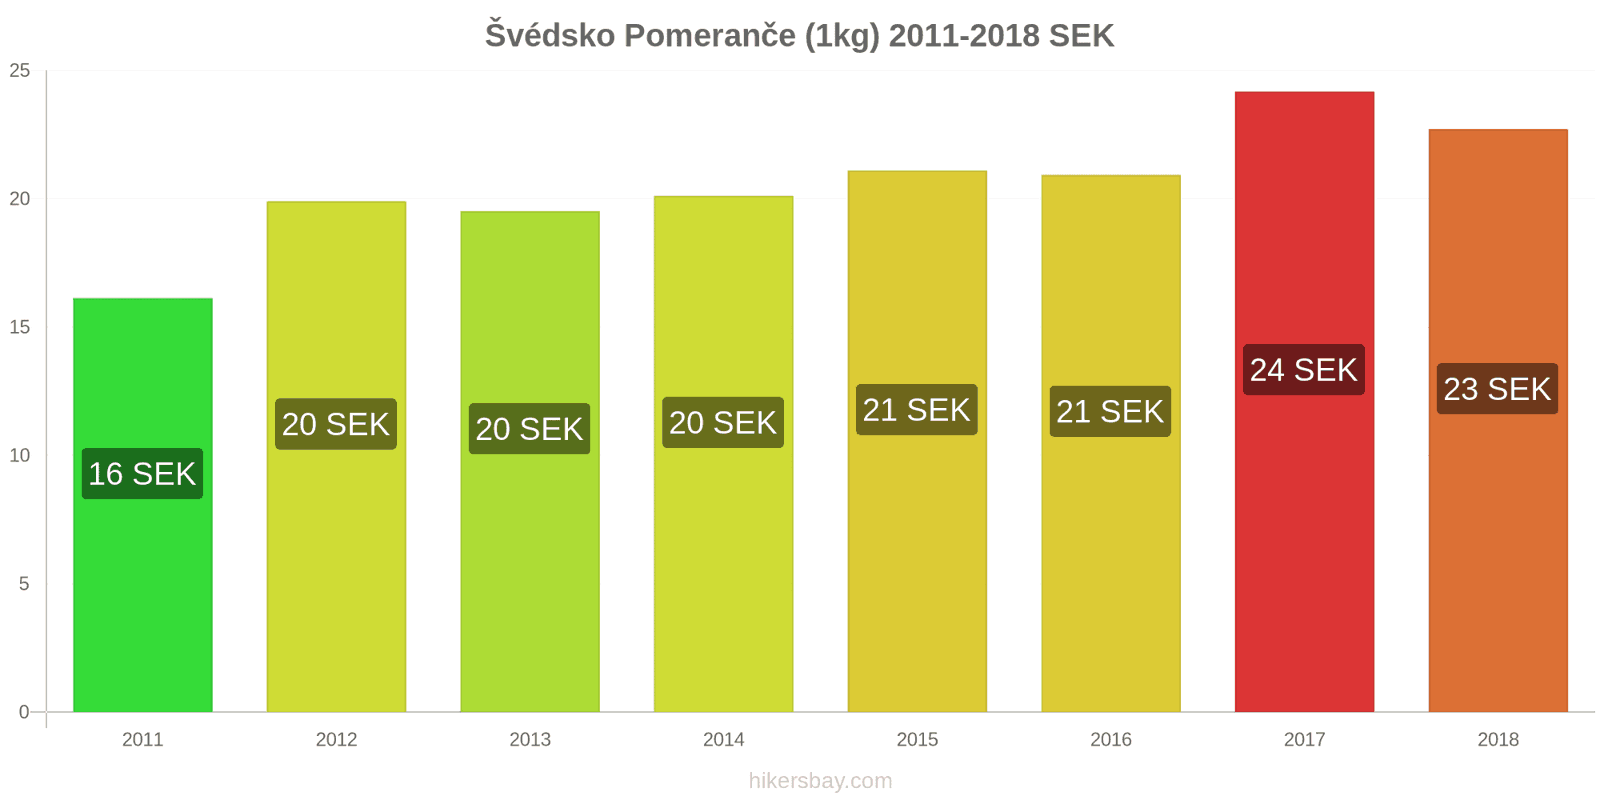 Švédsko změny cen Pomeranče (1kg) hikersbay.com